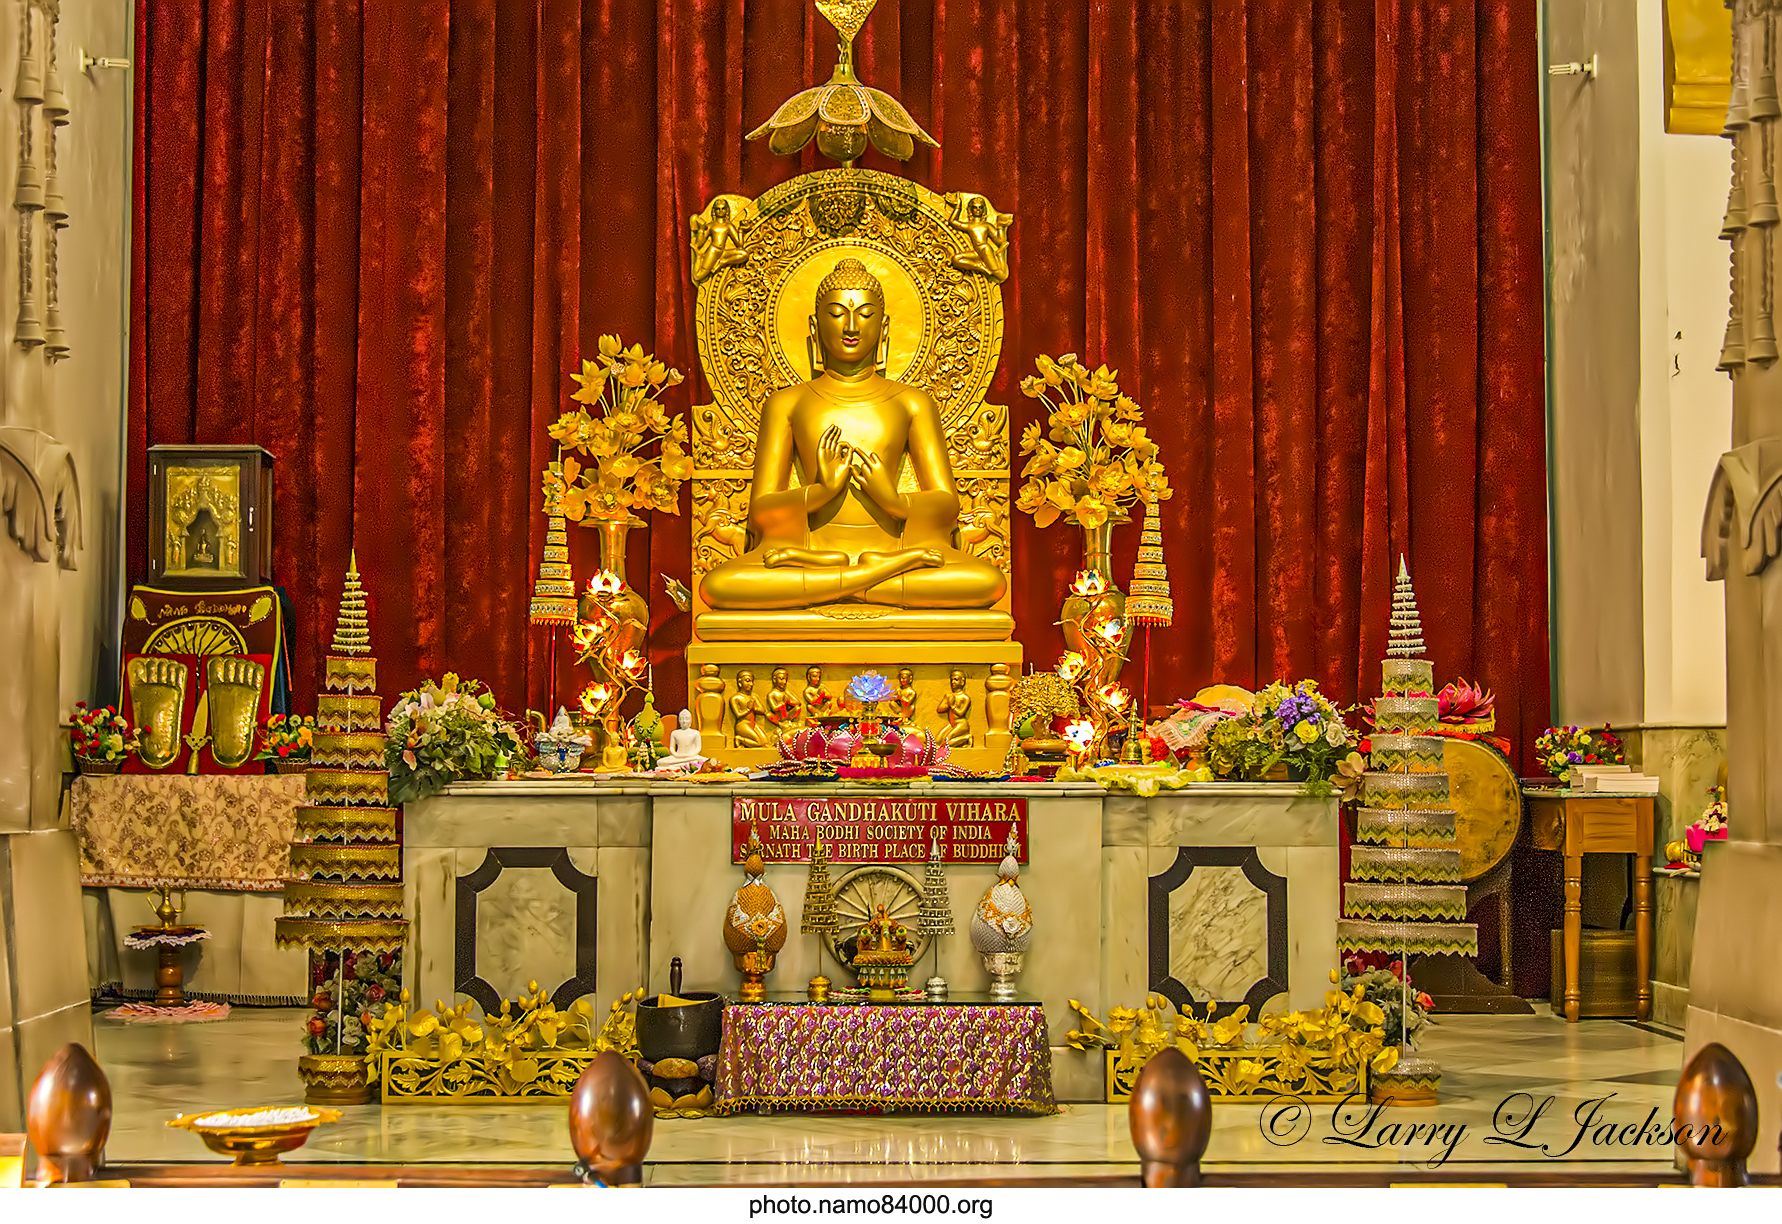 Tượng cổ về Đức Phật Thích Ca Mâu Ni đang thuyết pháp | Old Statue of Gotama Buddha preaching the first sermon